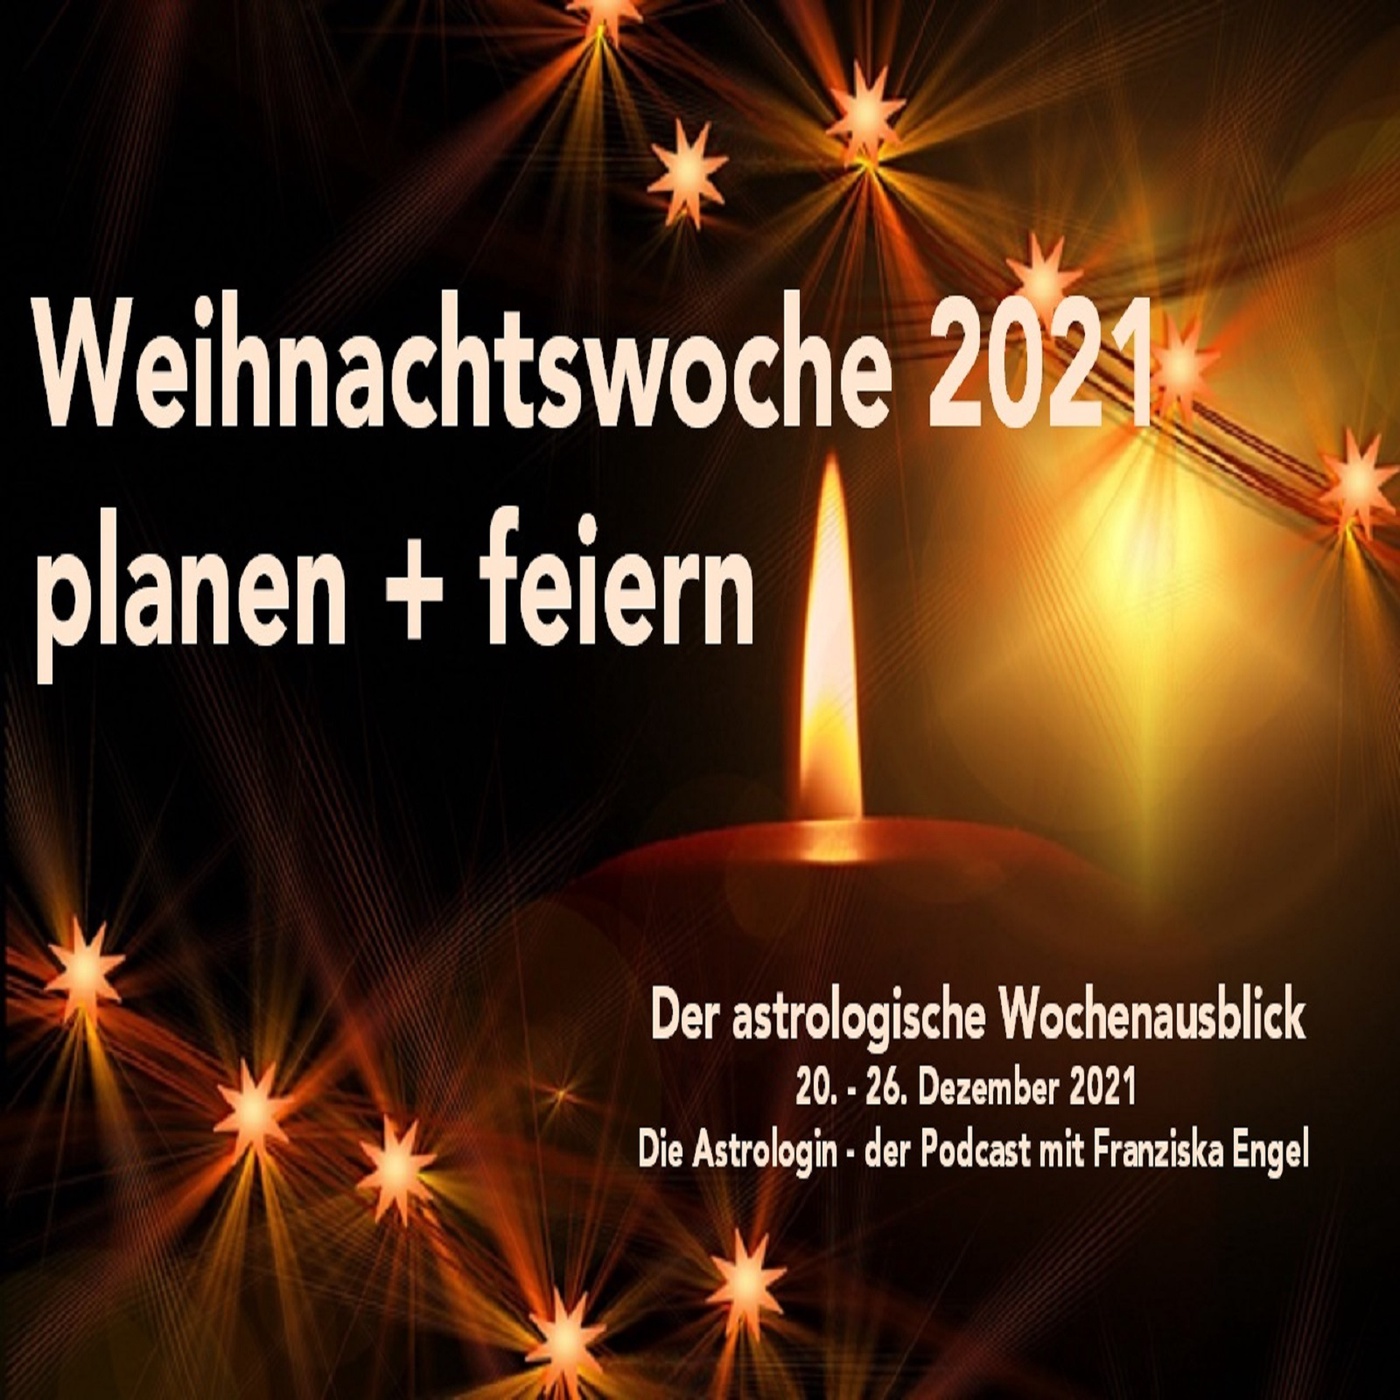 Weihnachtswoche 2021 - planen + feiern